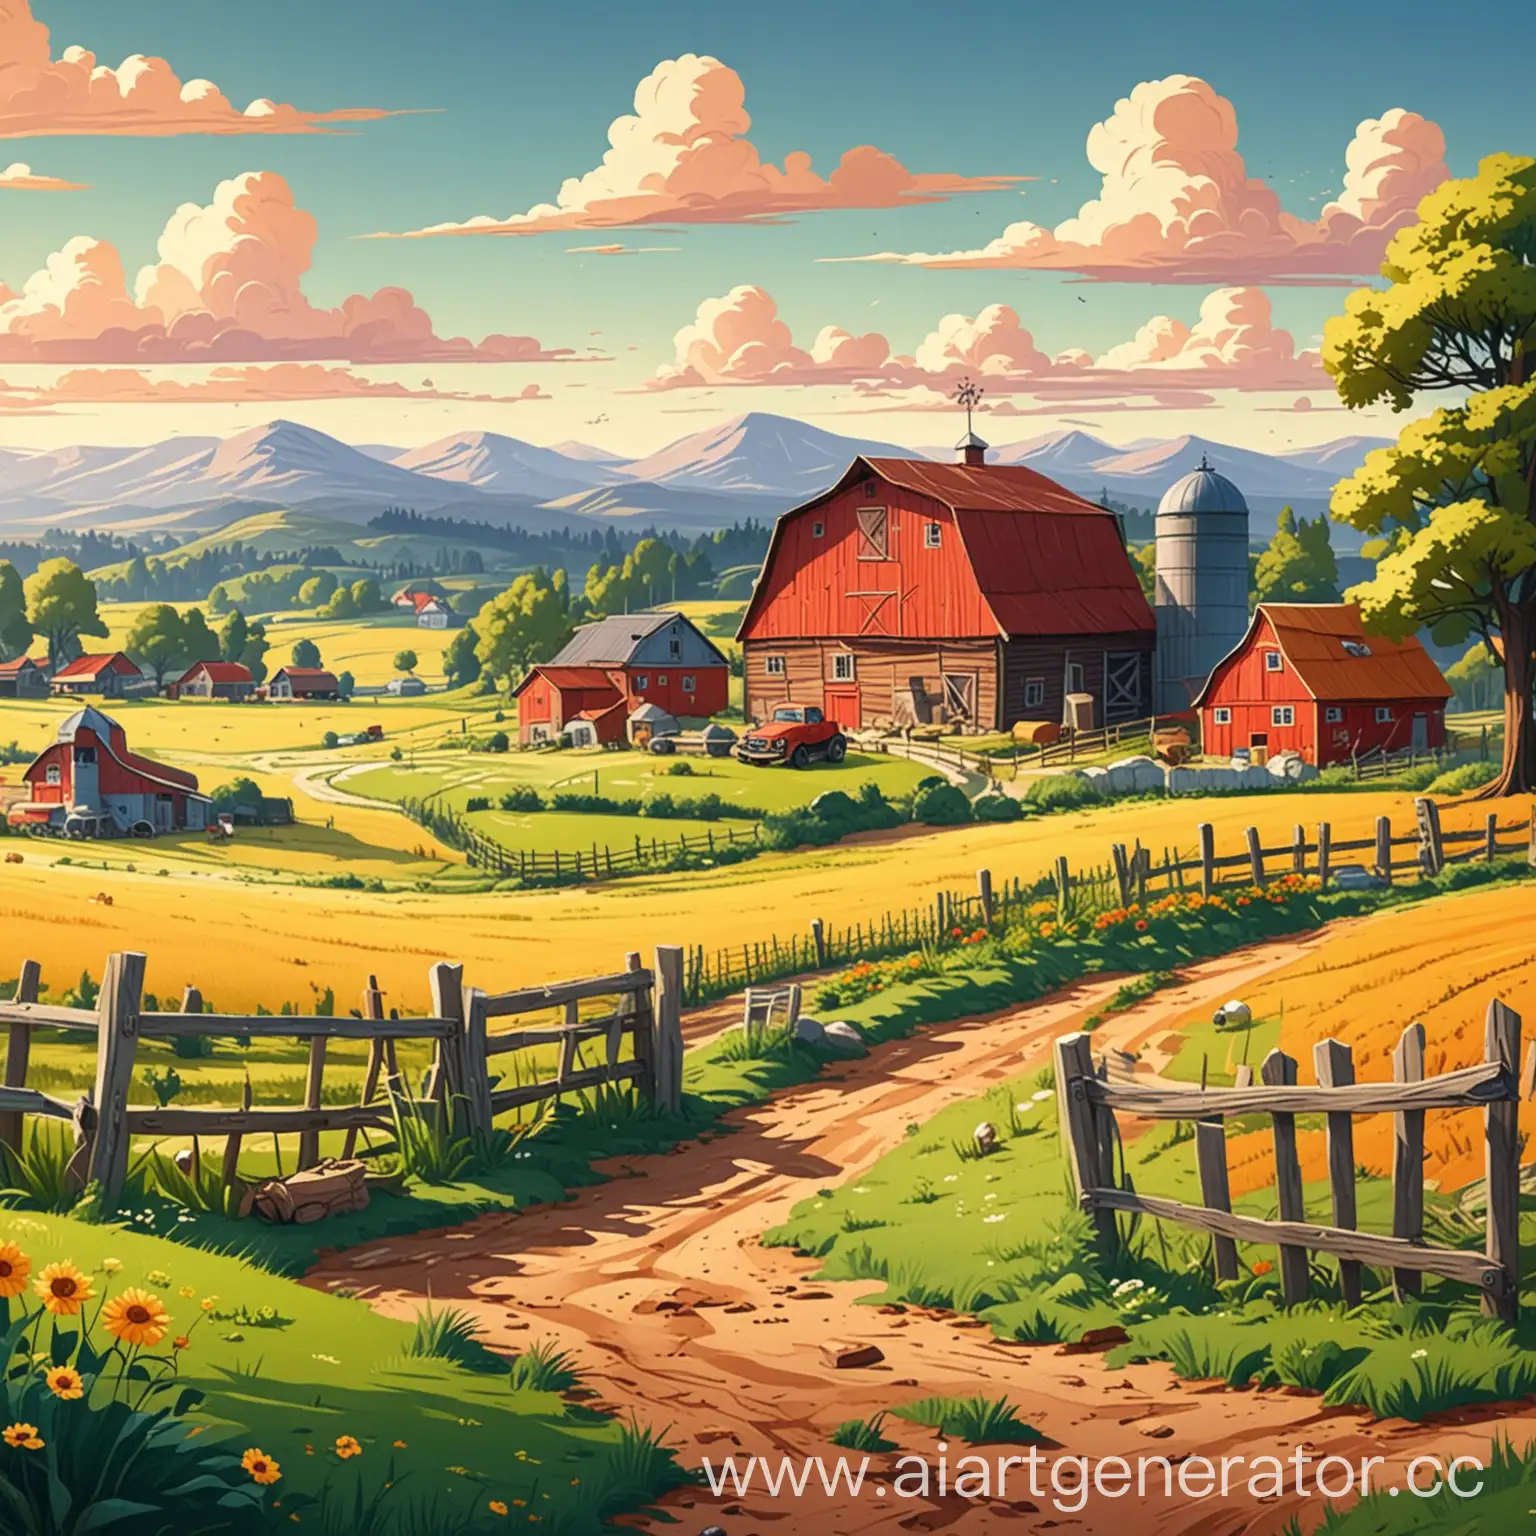 Пейзаж с фермой в стиле мультиков 90-00 годов
